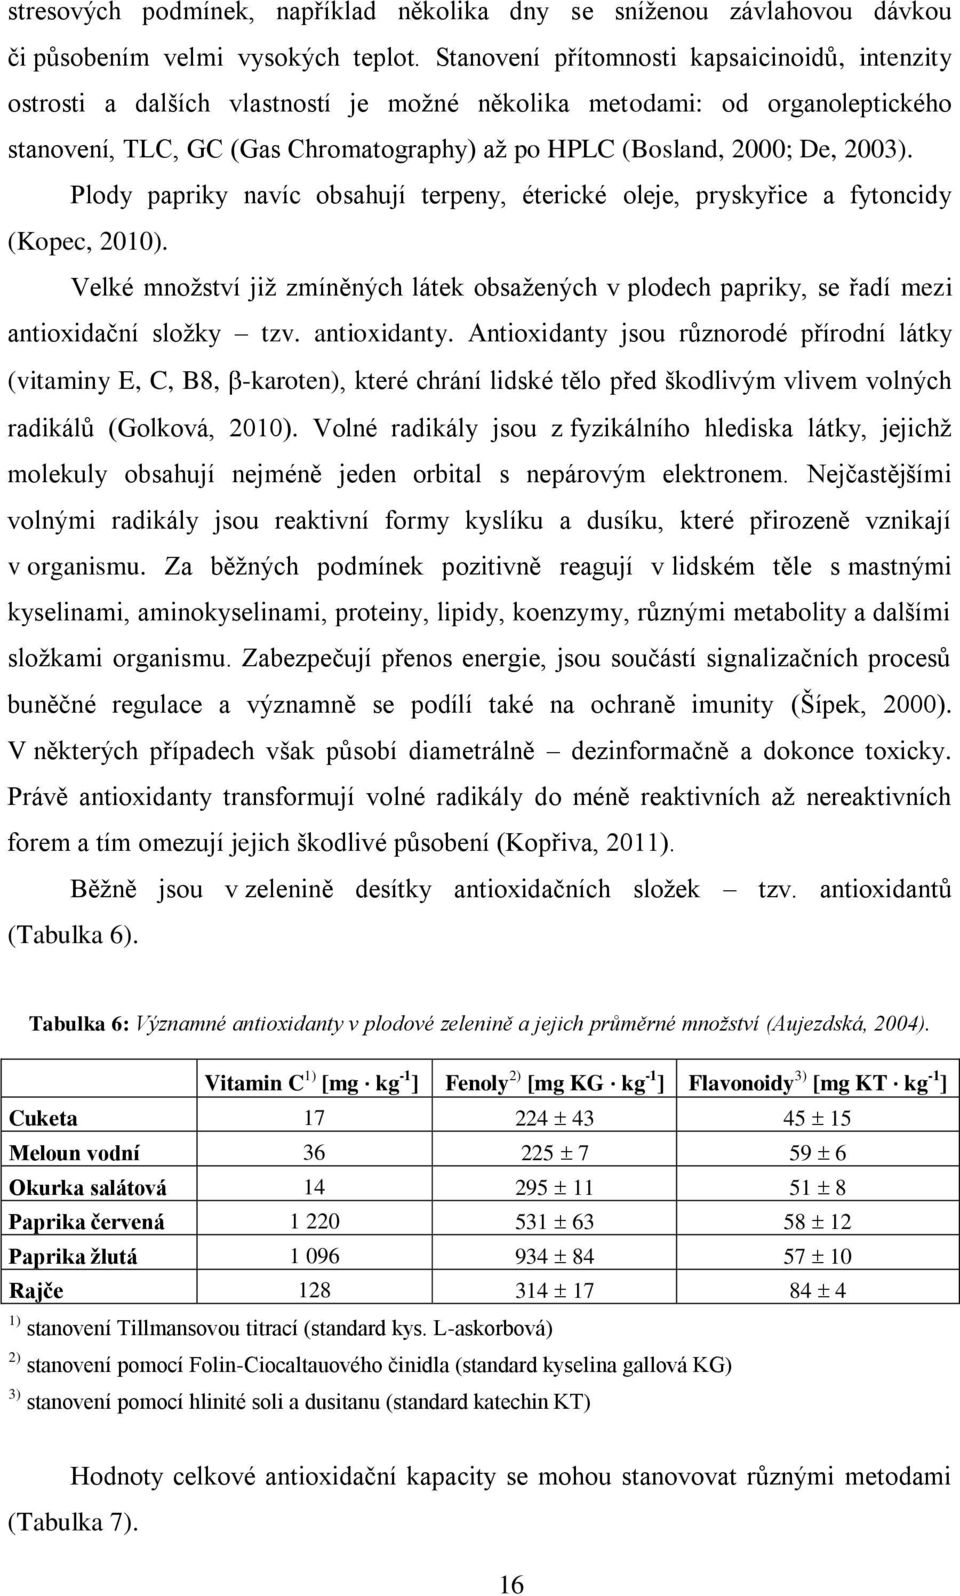 2003). Plody papriky navíc obsahují terpeny, éterické oleje, pryskyřice a fytoncidy (Kopec, 2010).